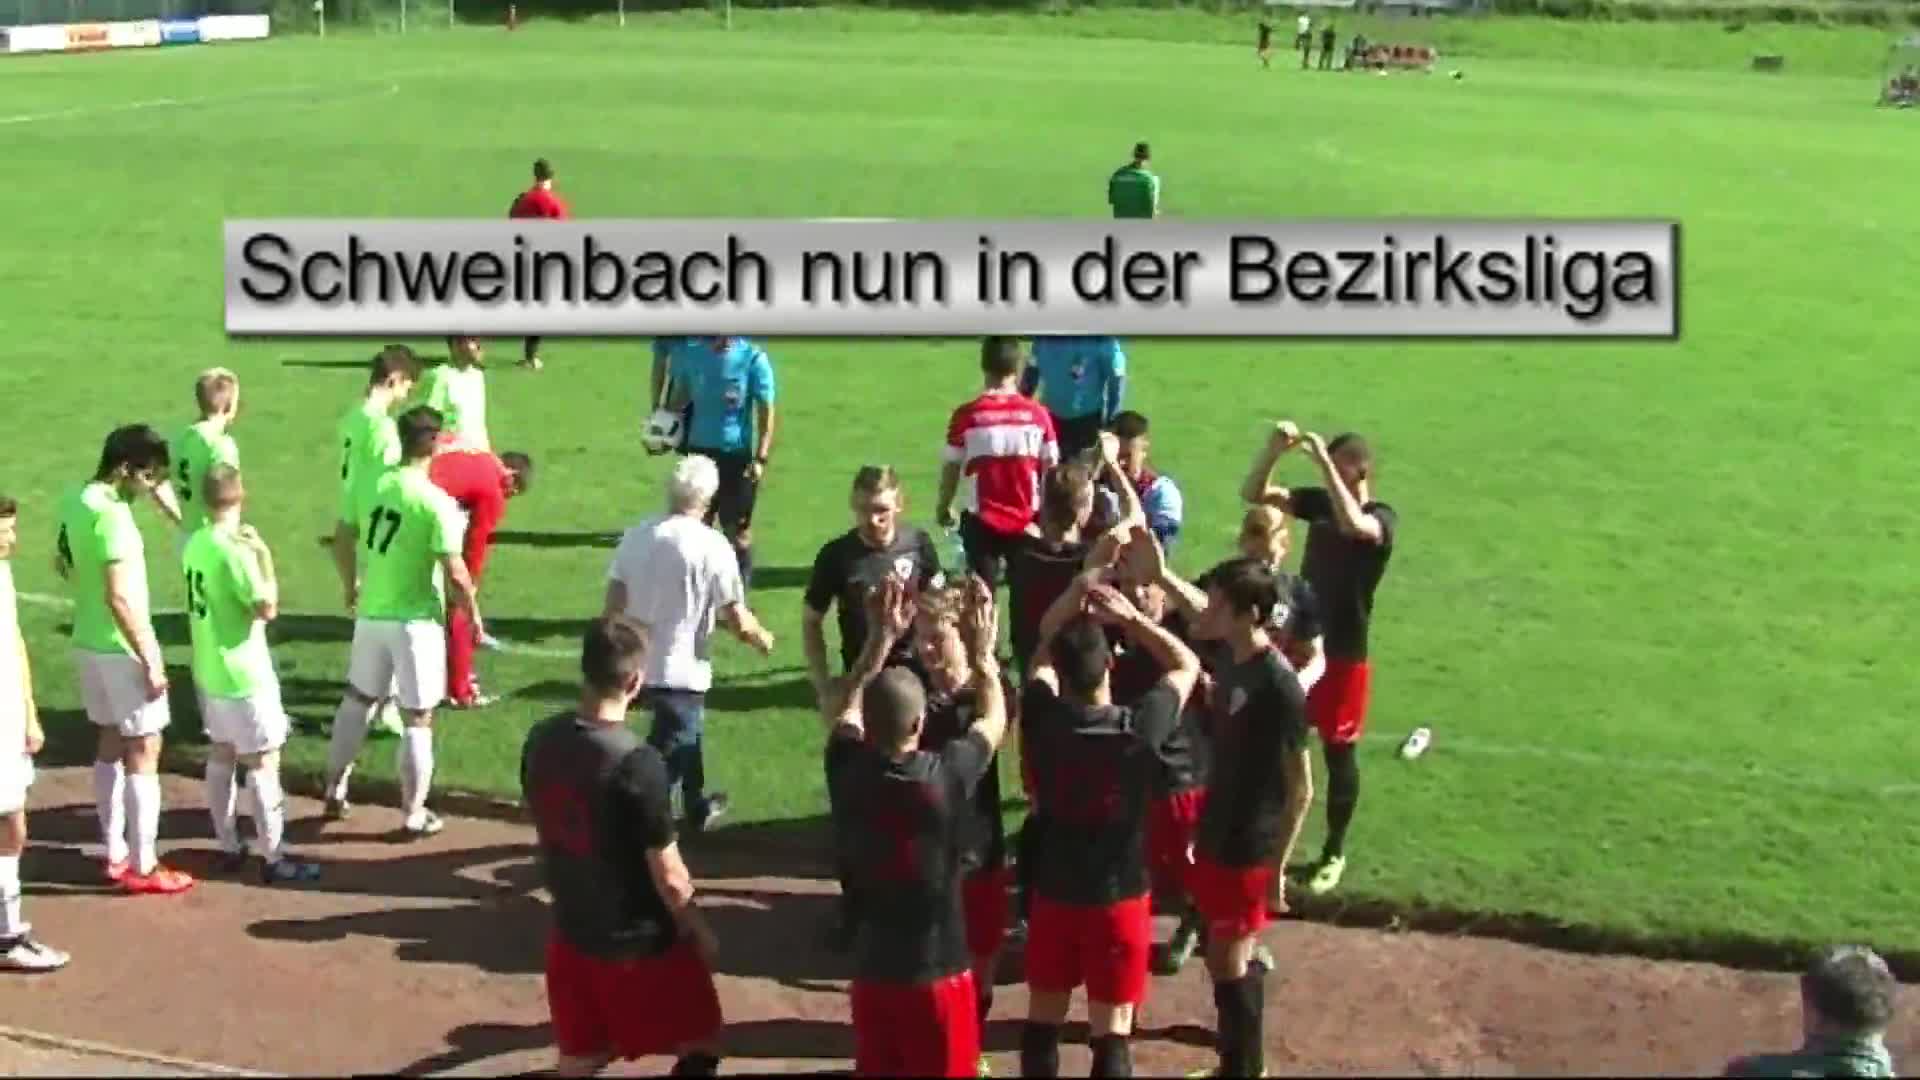 Schweinbach nun in der Bezirksliga